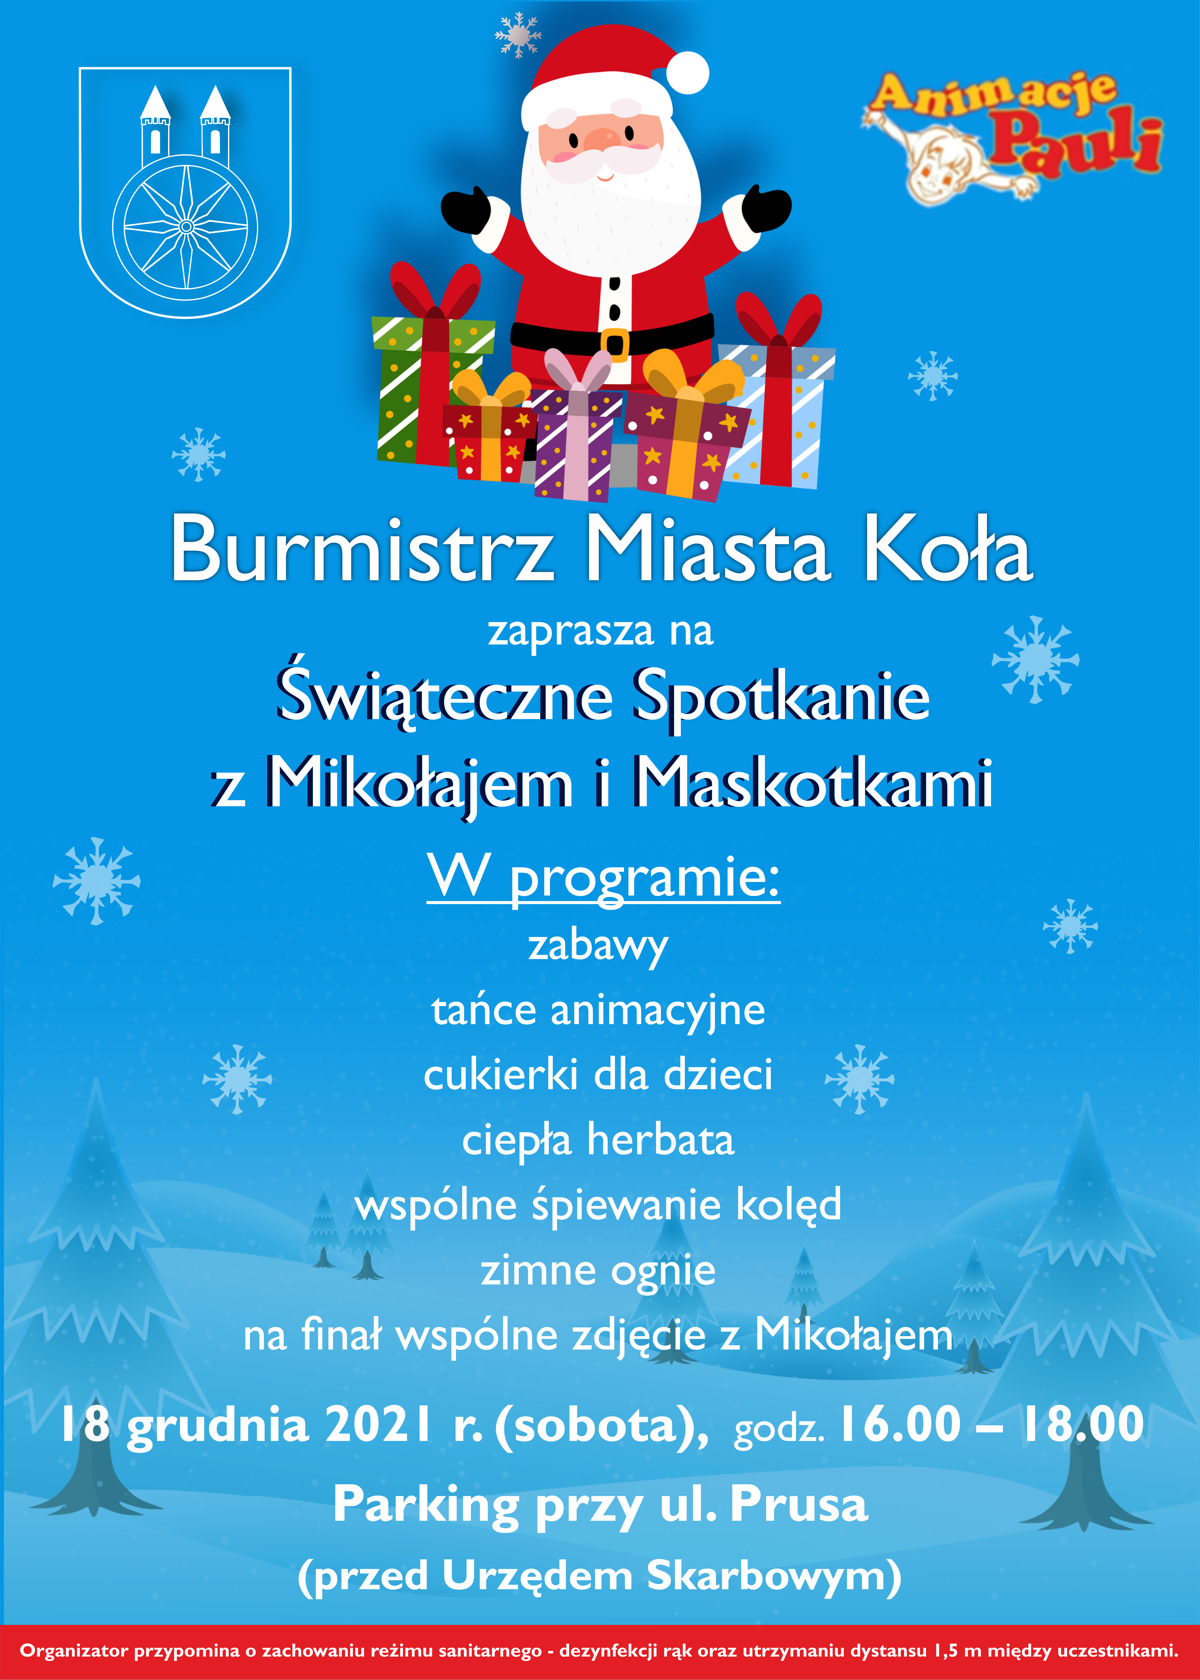 Plakat Świąteczne Spotkanie z Mikołajem i Maskotkami, treść pod plakatem.